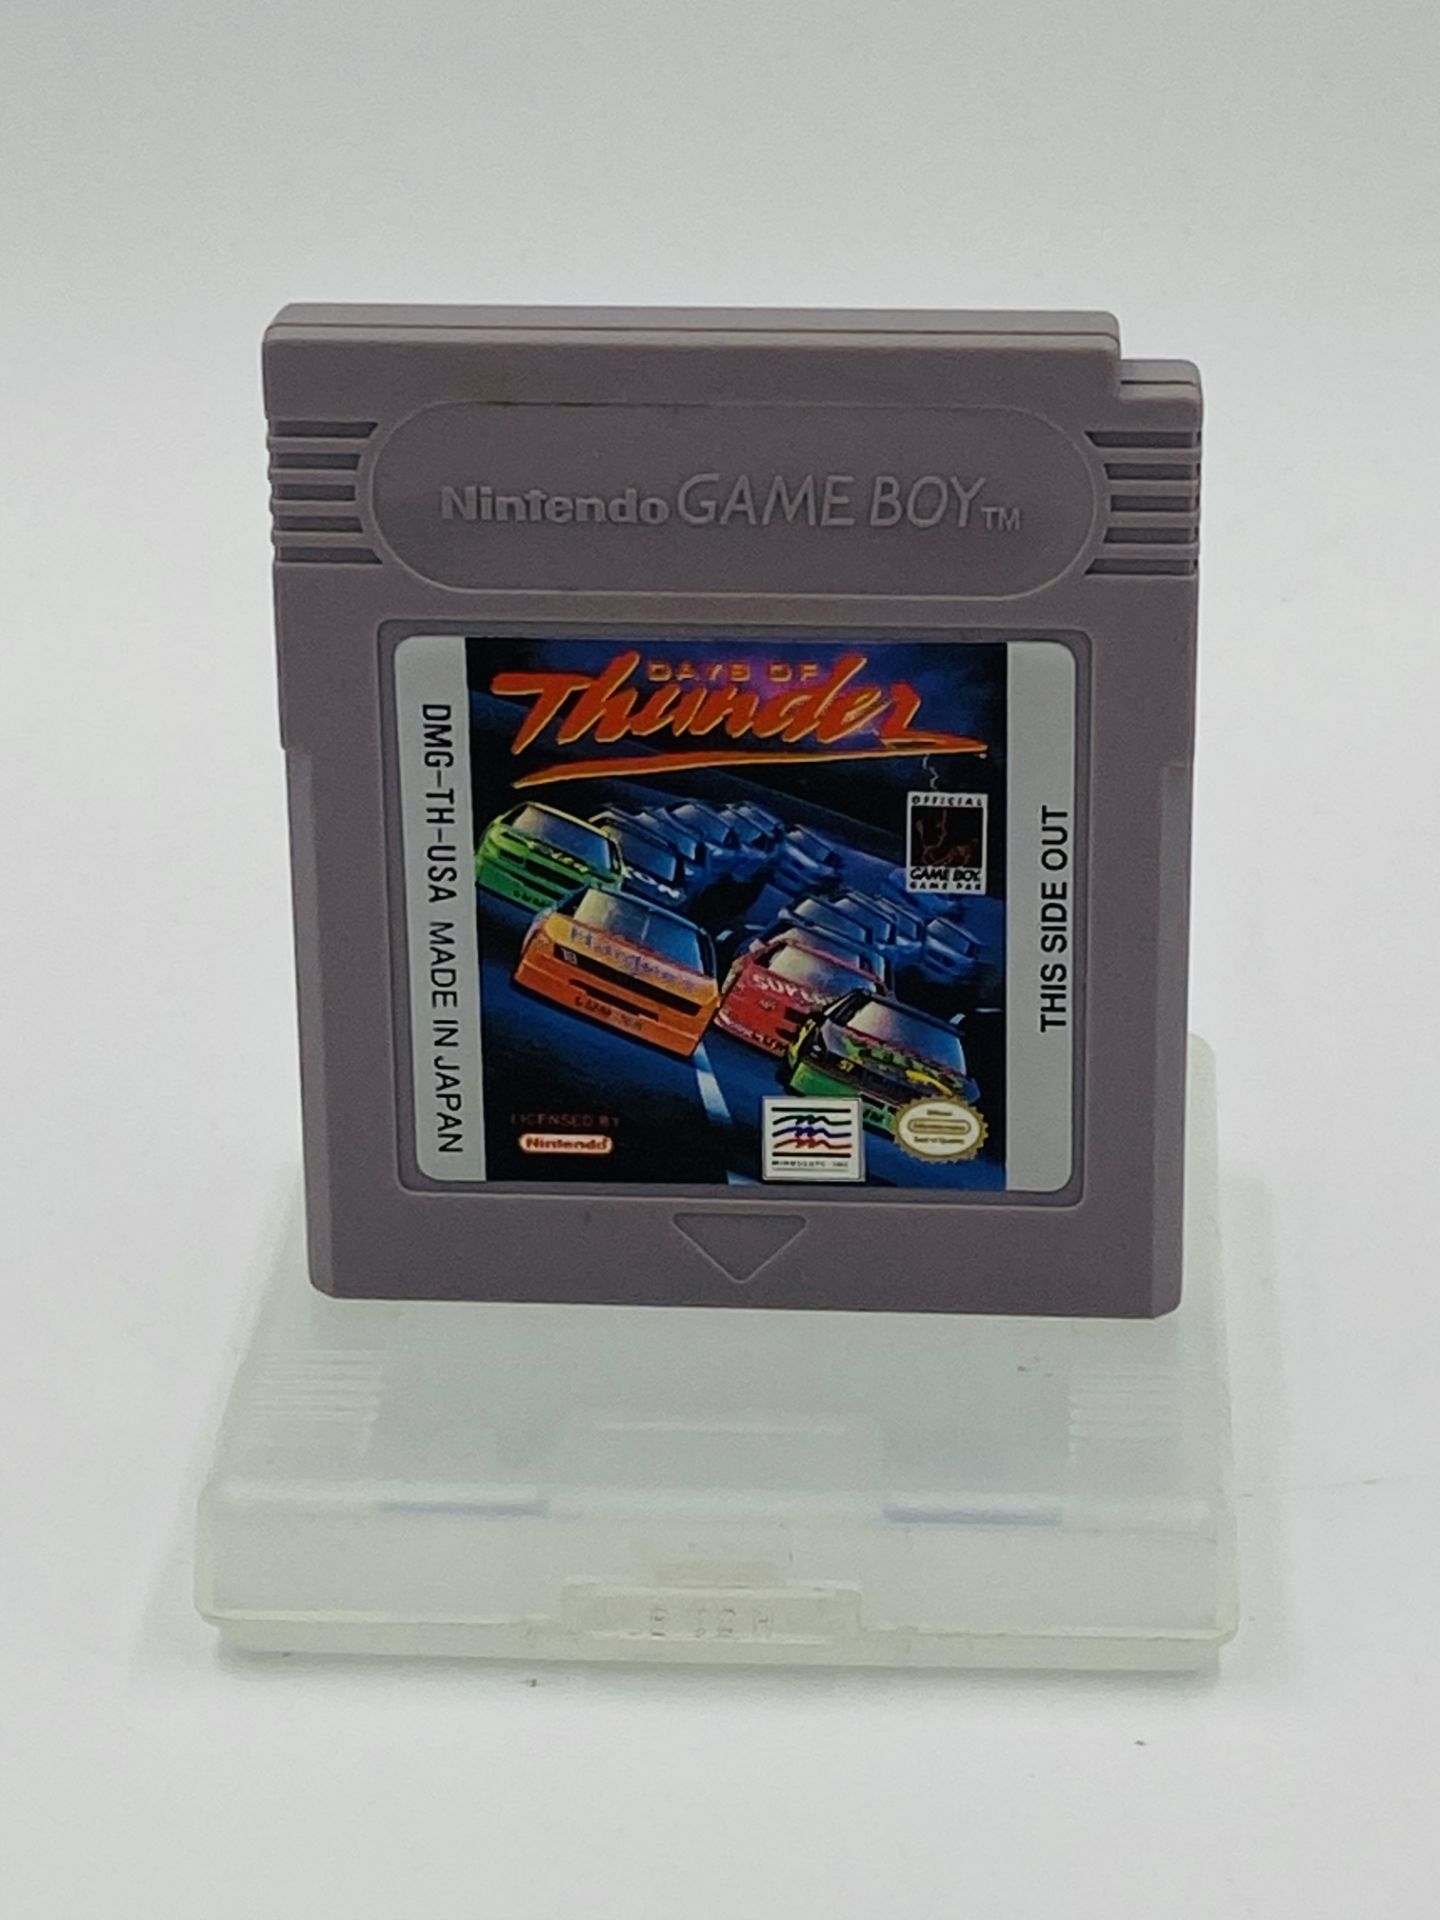 Nintendo Game Boy Days of Thunder, boxed - Image 4 of 4